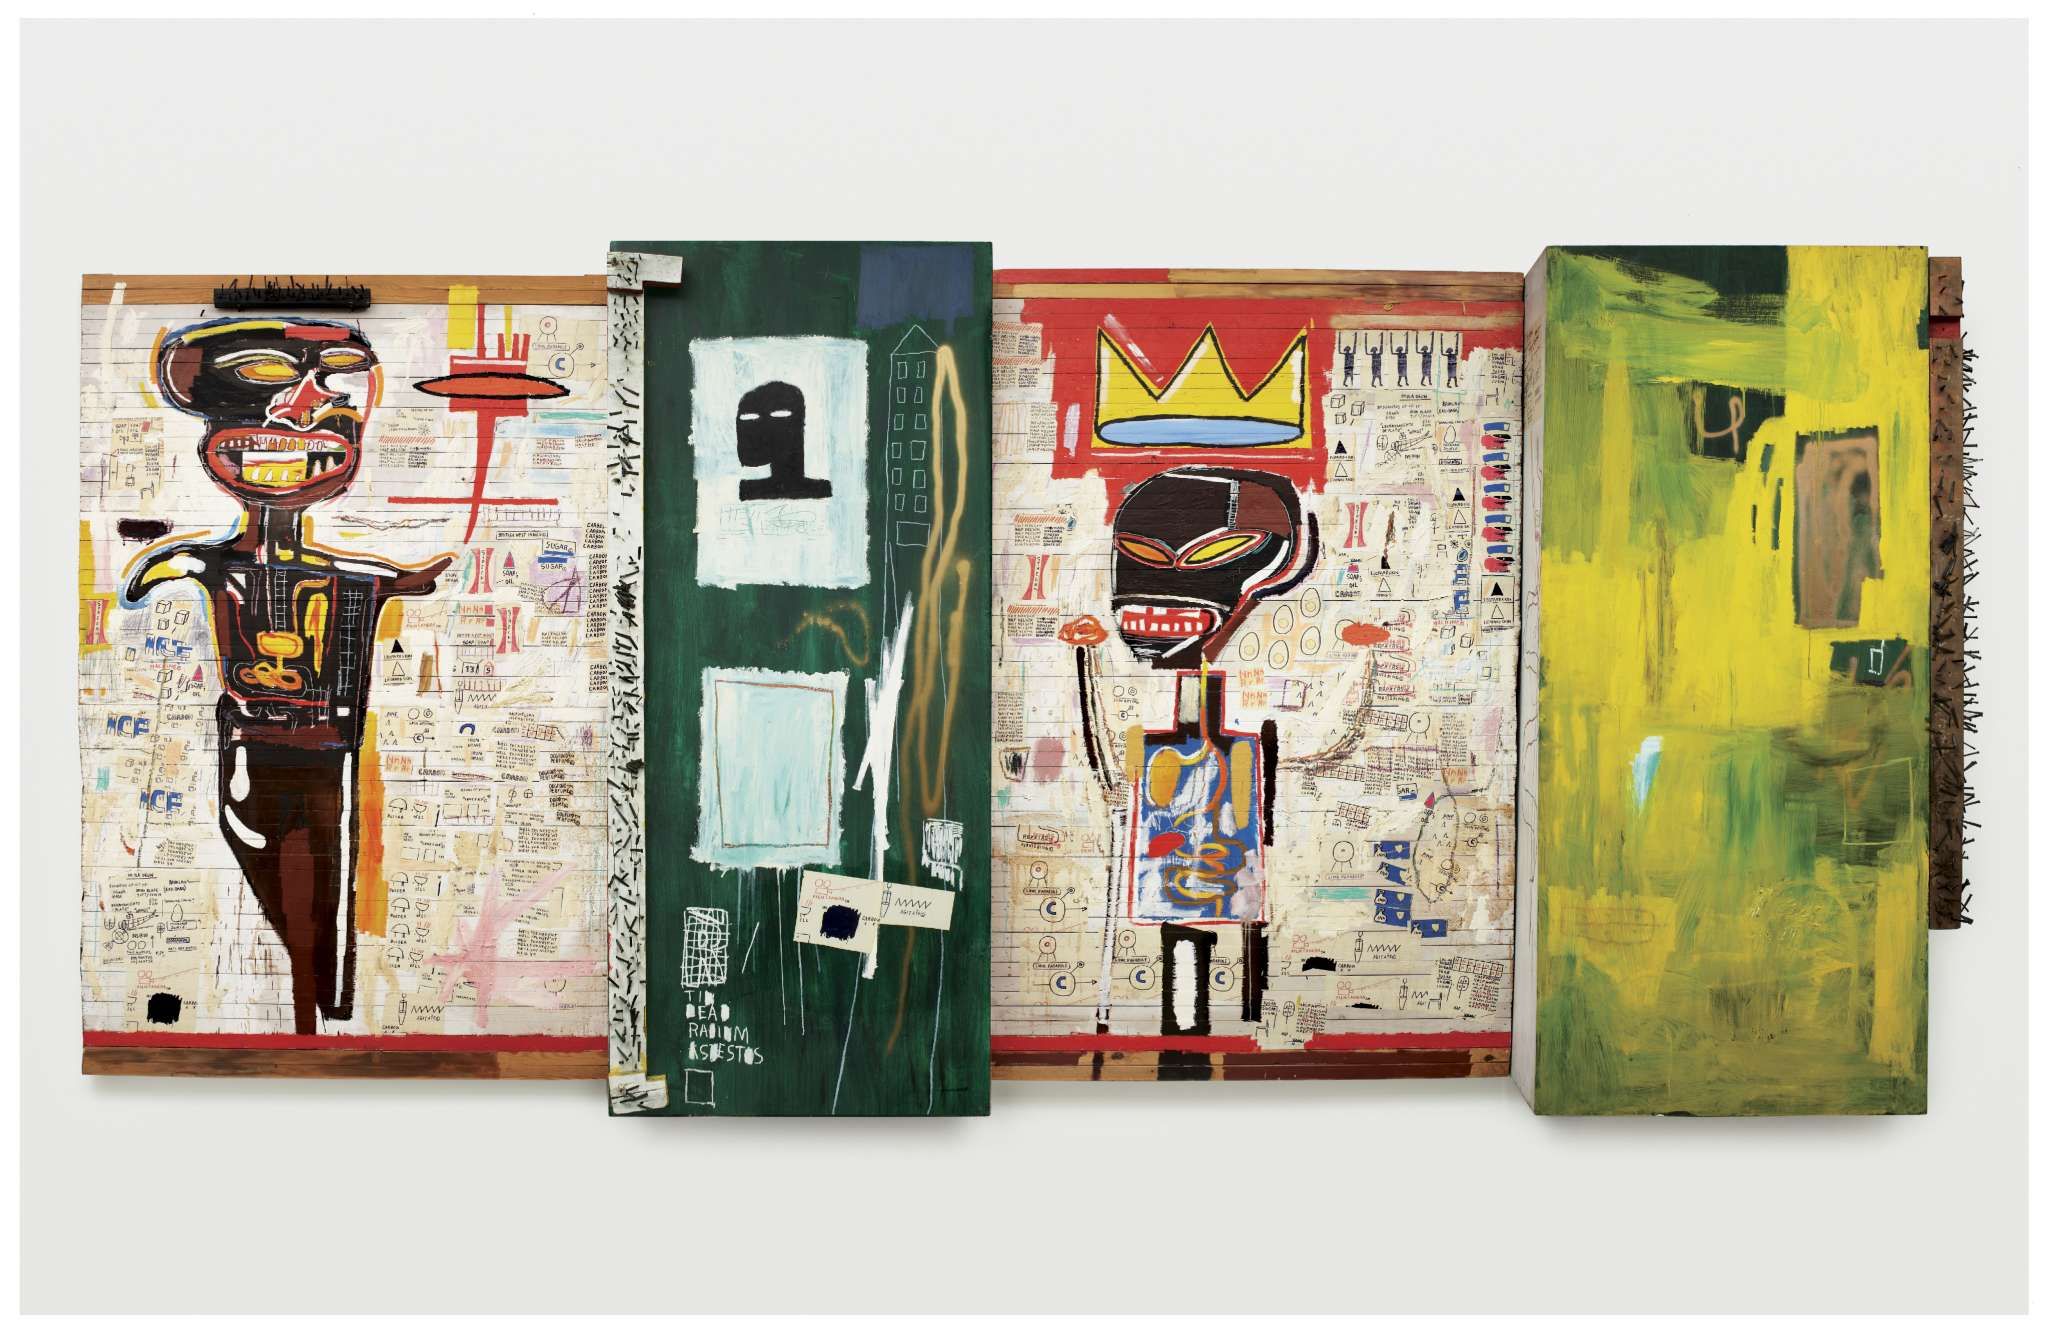 (Français) Jean-Michel Basquiat à la Fondation Louis Vuitton